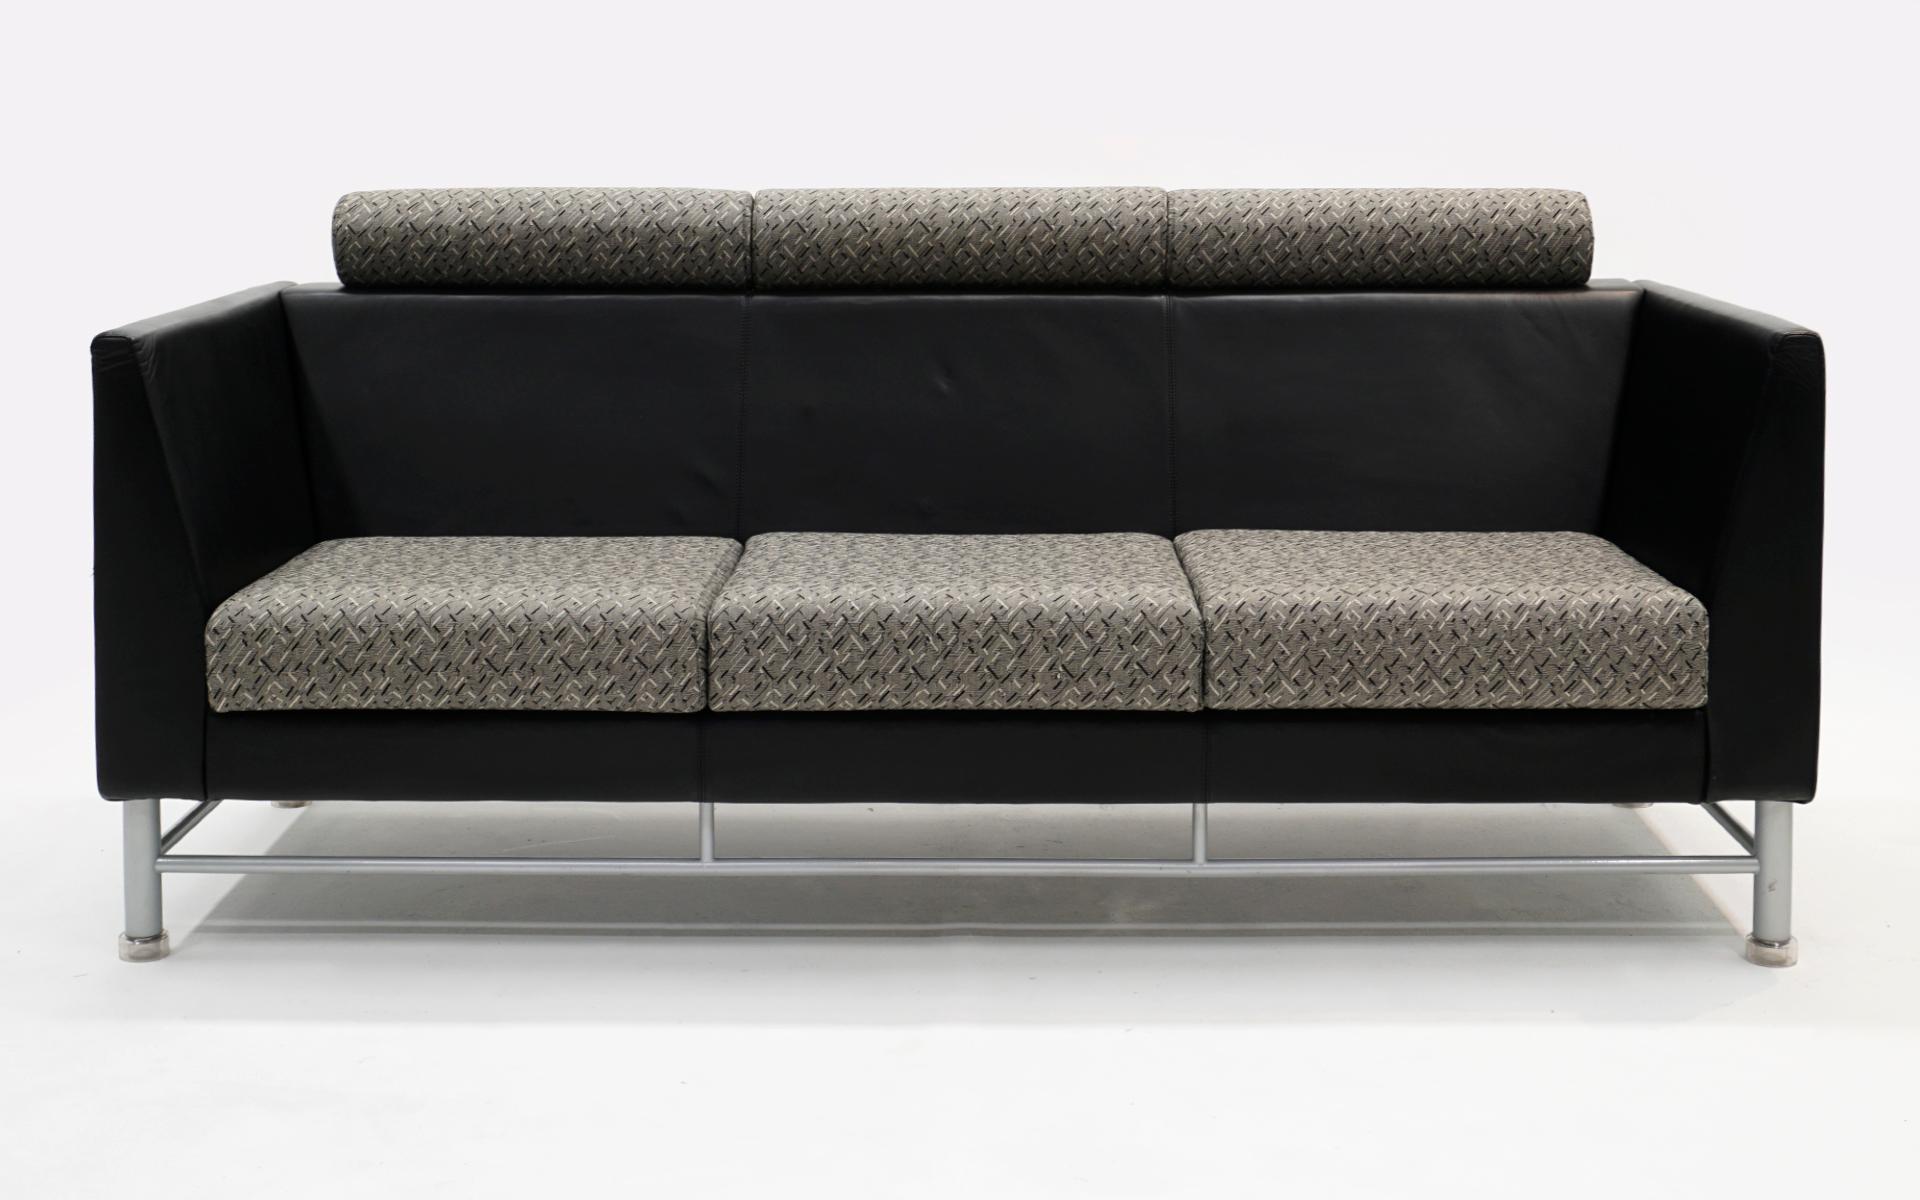 Eastside Sofa von Ettore Sottsass, hergestellt von Knoll, 1980er Jahre. Original schwarzes Leder und grau und schwarz gemusterter Stoff. Sockel aus Aluminium und Stahl. Es gibt keine Risse, signifikante Kratzer oder Reparaturen am Leder. Es gibt